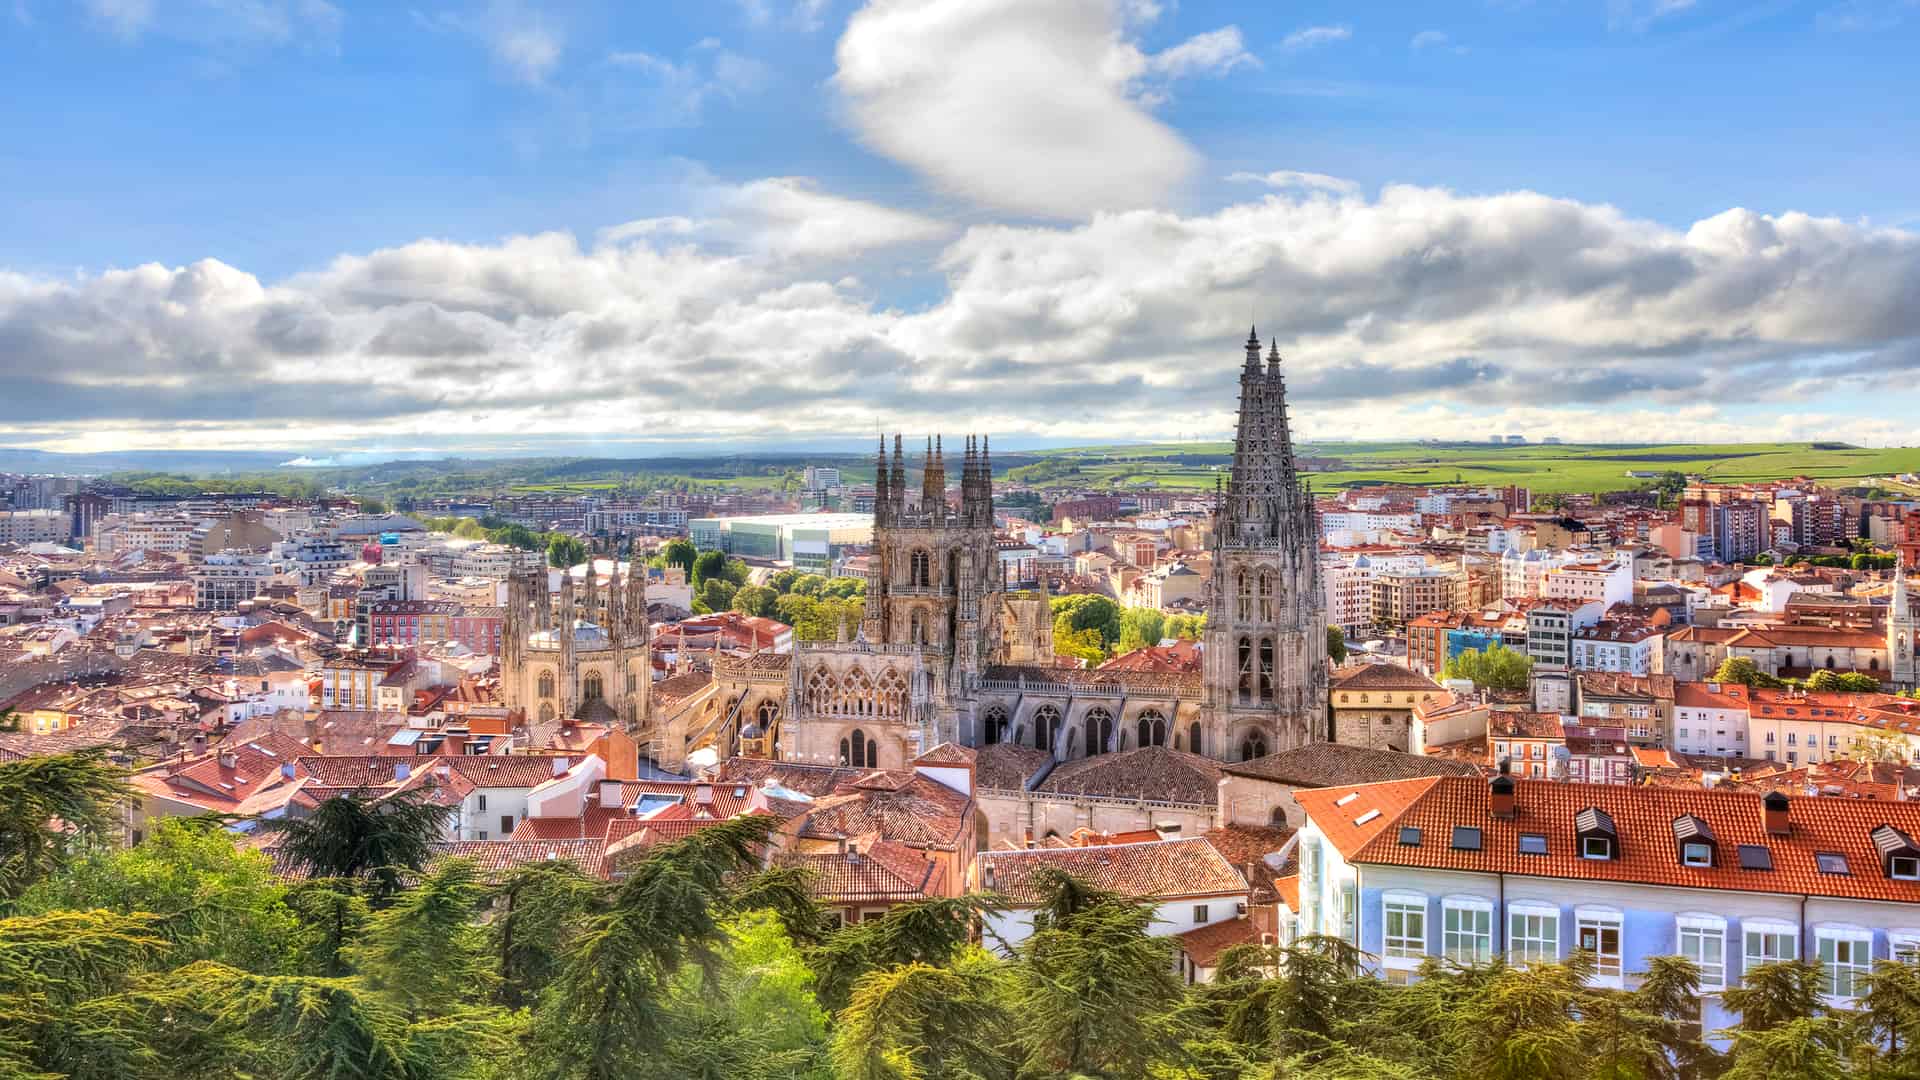 Burgos. Catedral de nuestra señora donde están disponibles los servicios telefónicos de yoigo